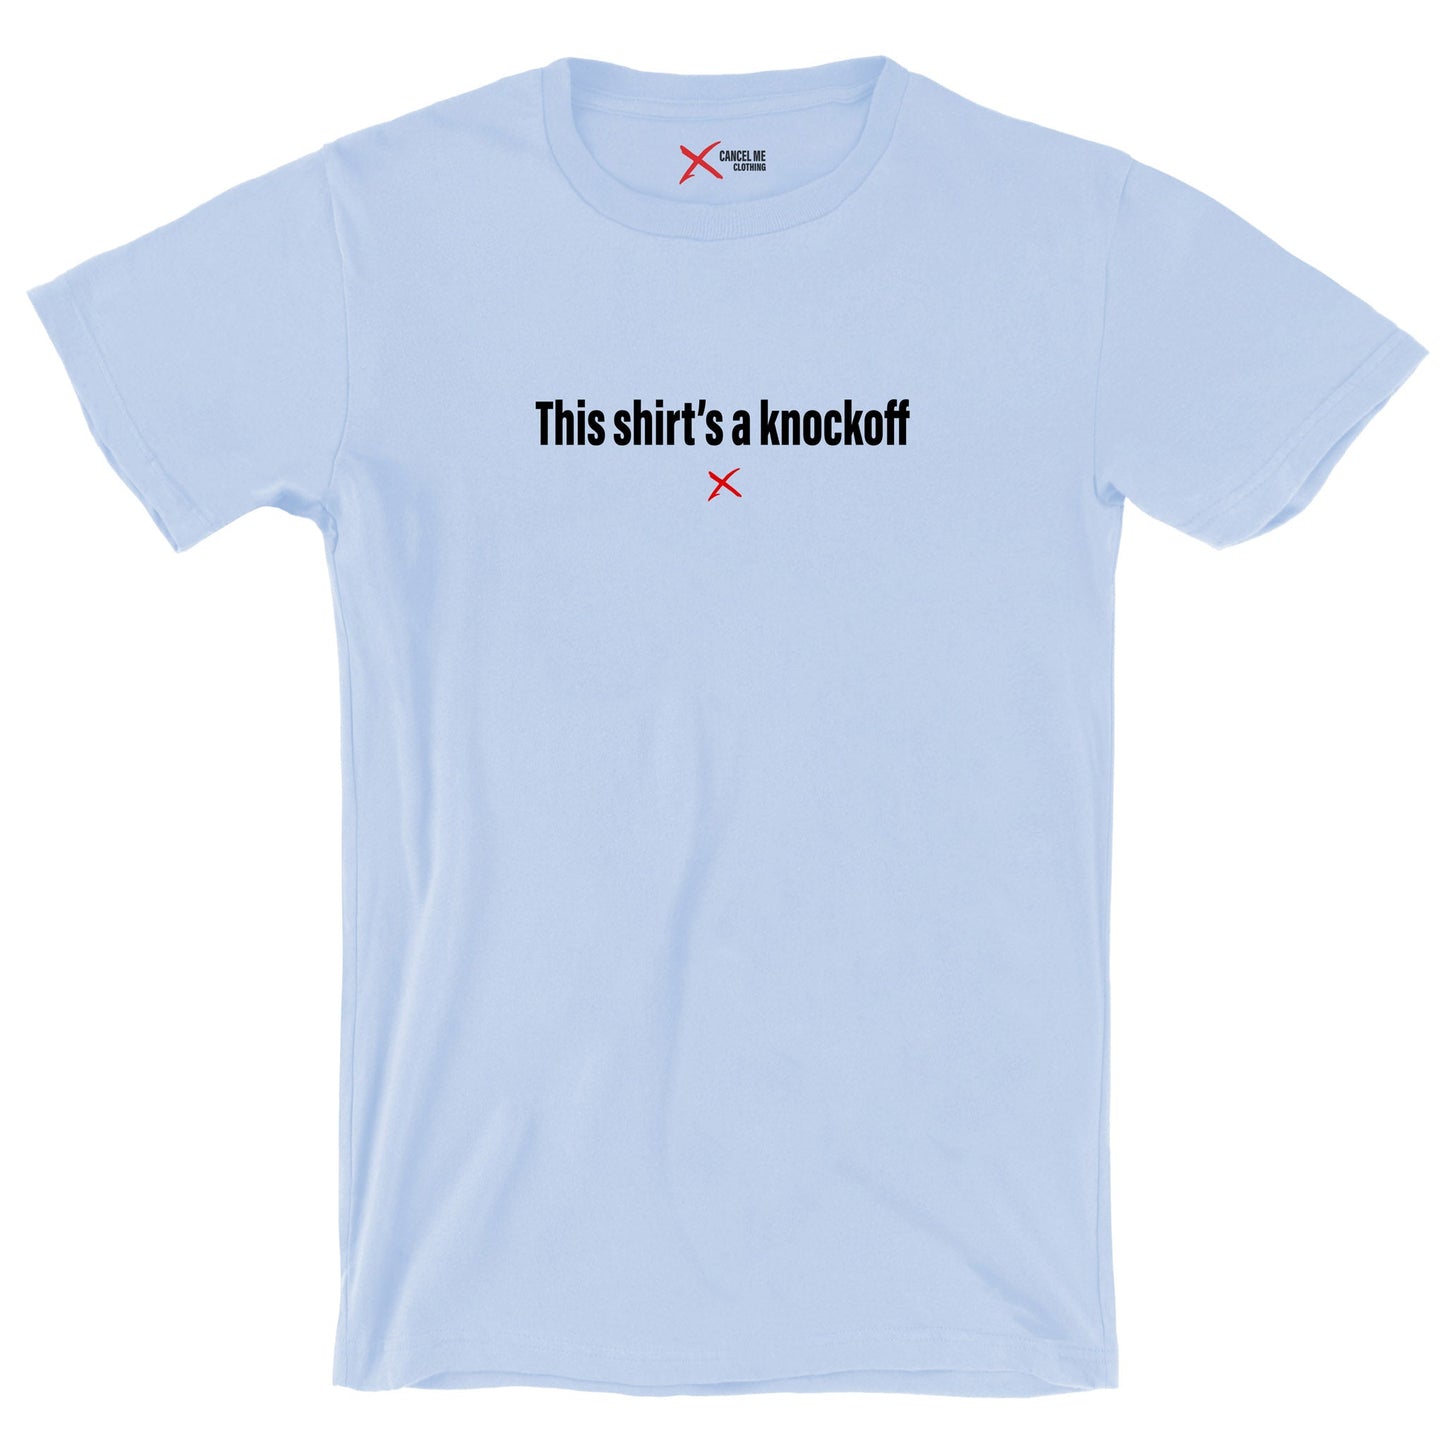 This shirt's a knockoff - Shirt